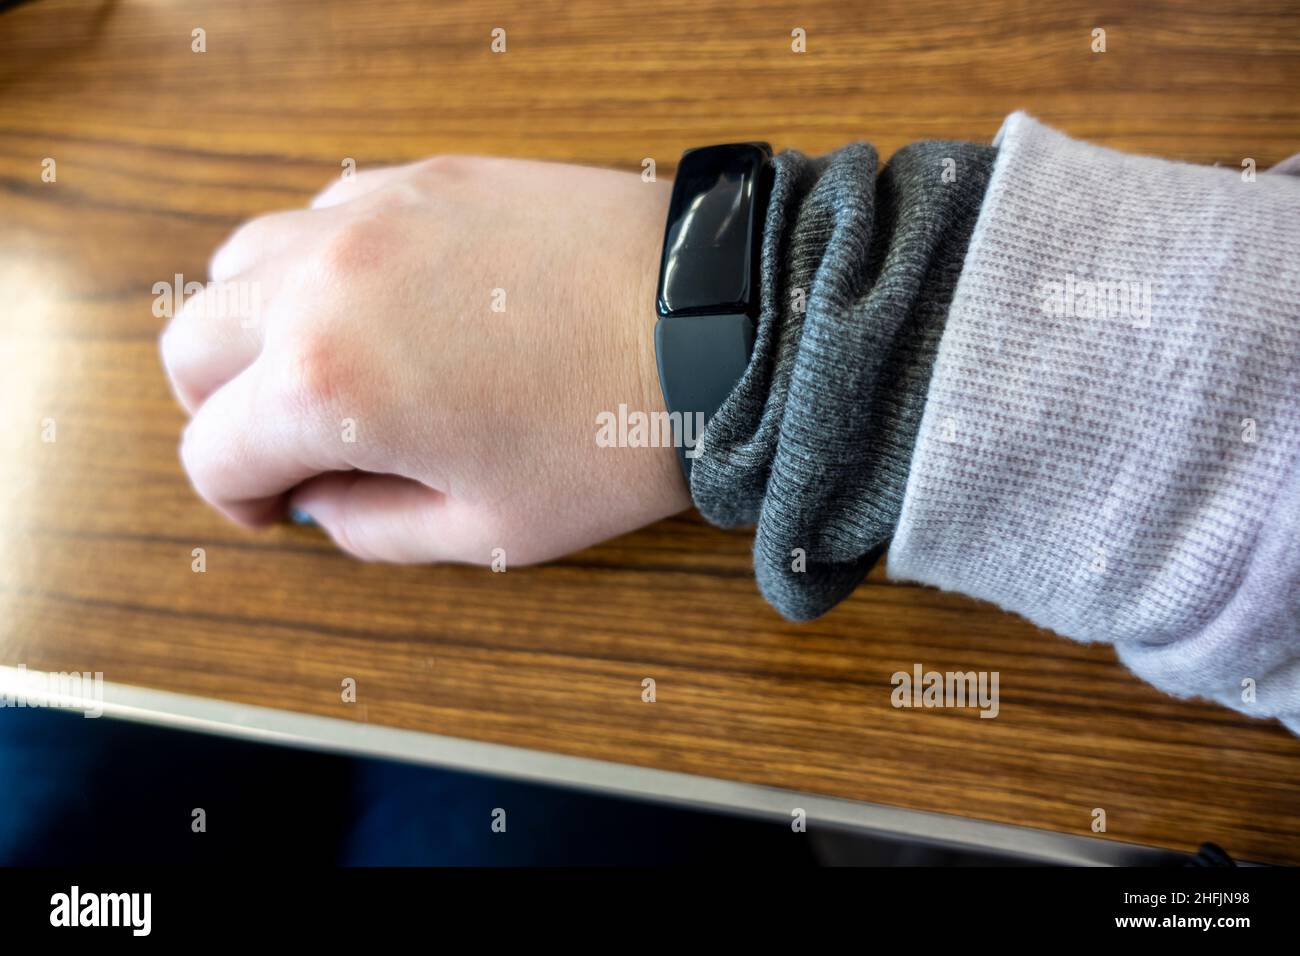 Blick auf eine casukasische, weibliche Hand mit einem schwarzen Fitness-Tracker am Handgelenk, gegen einen Holztisch gestellt Stockfoto